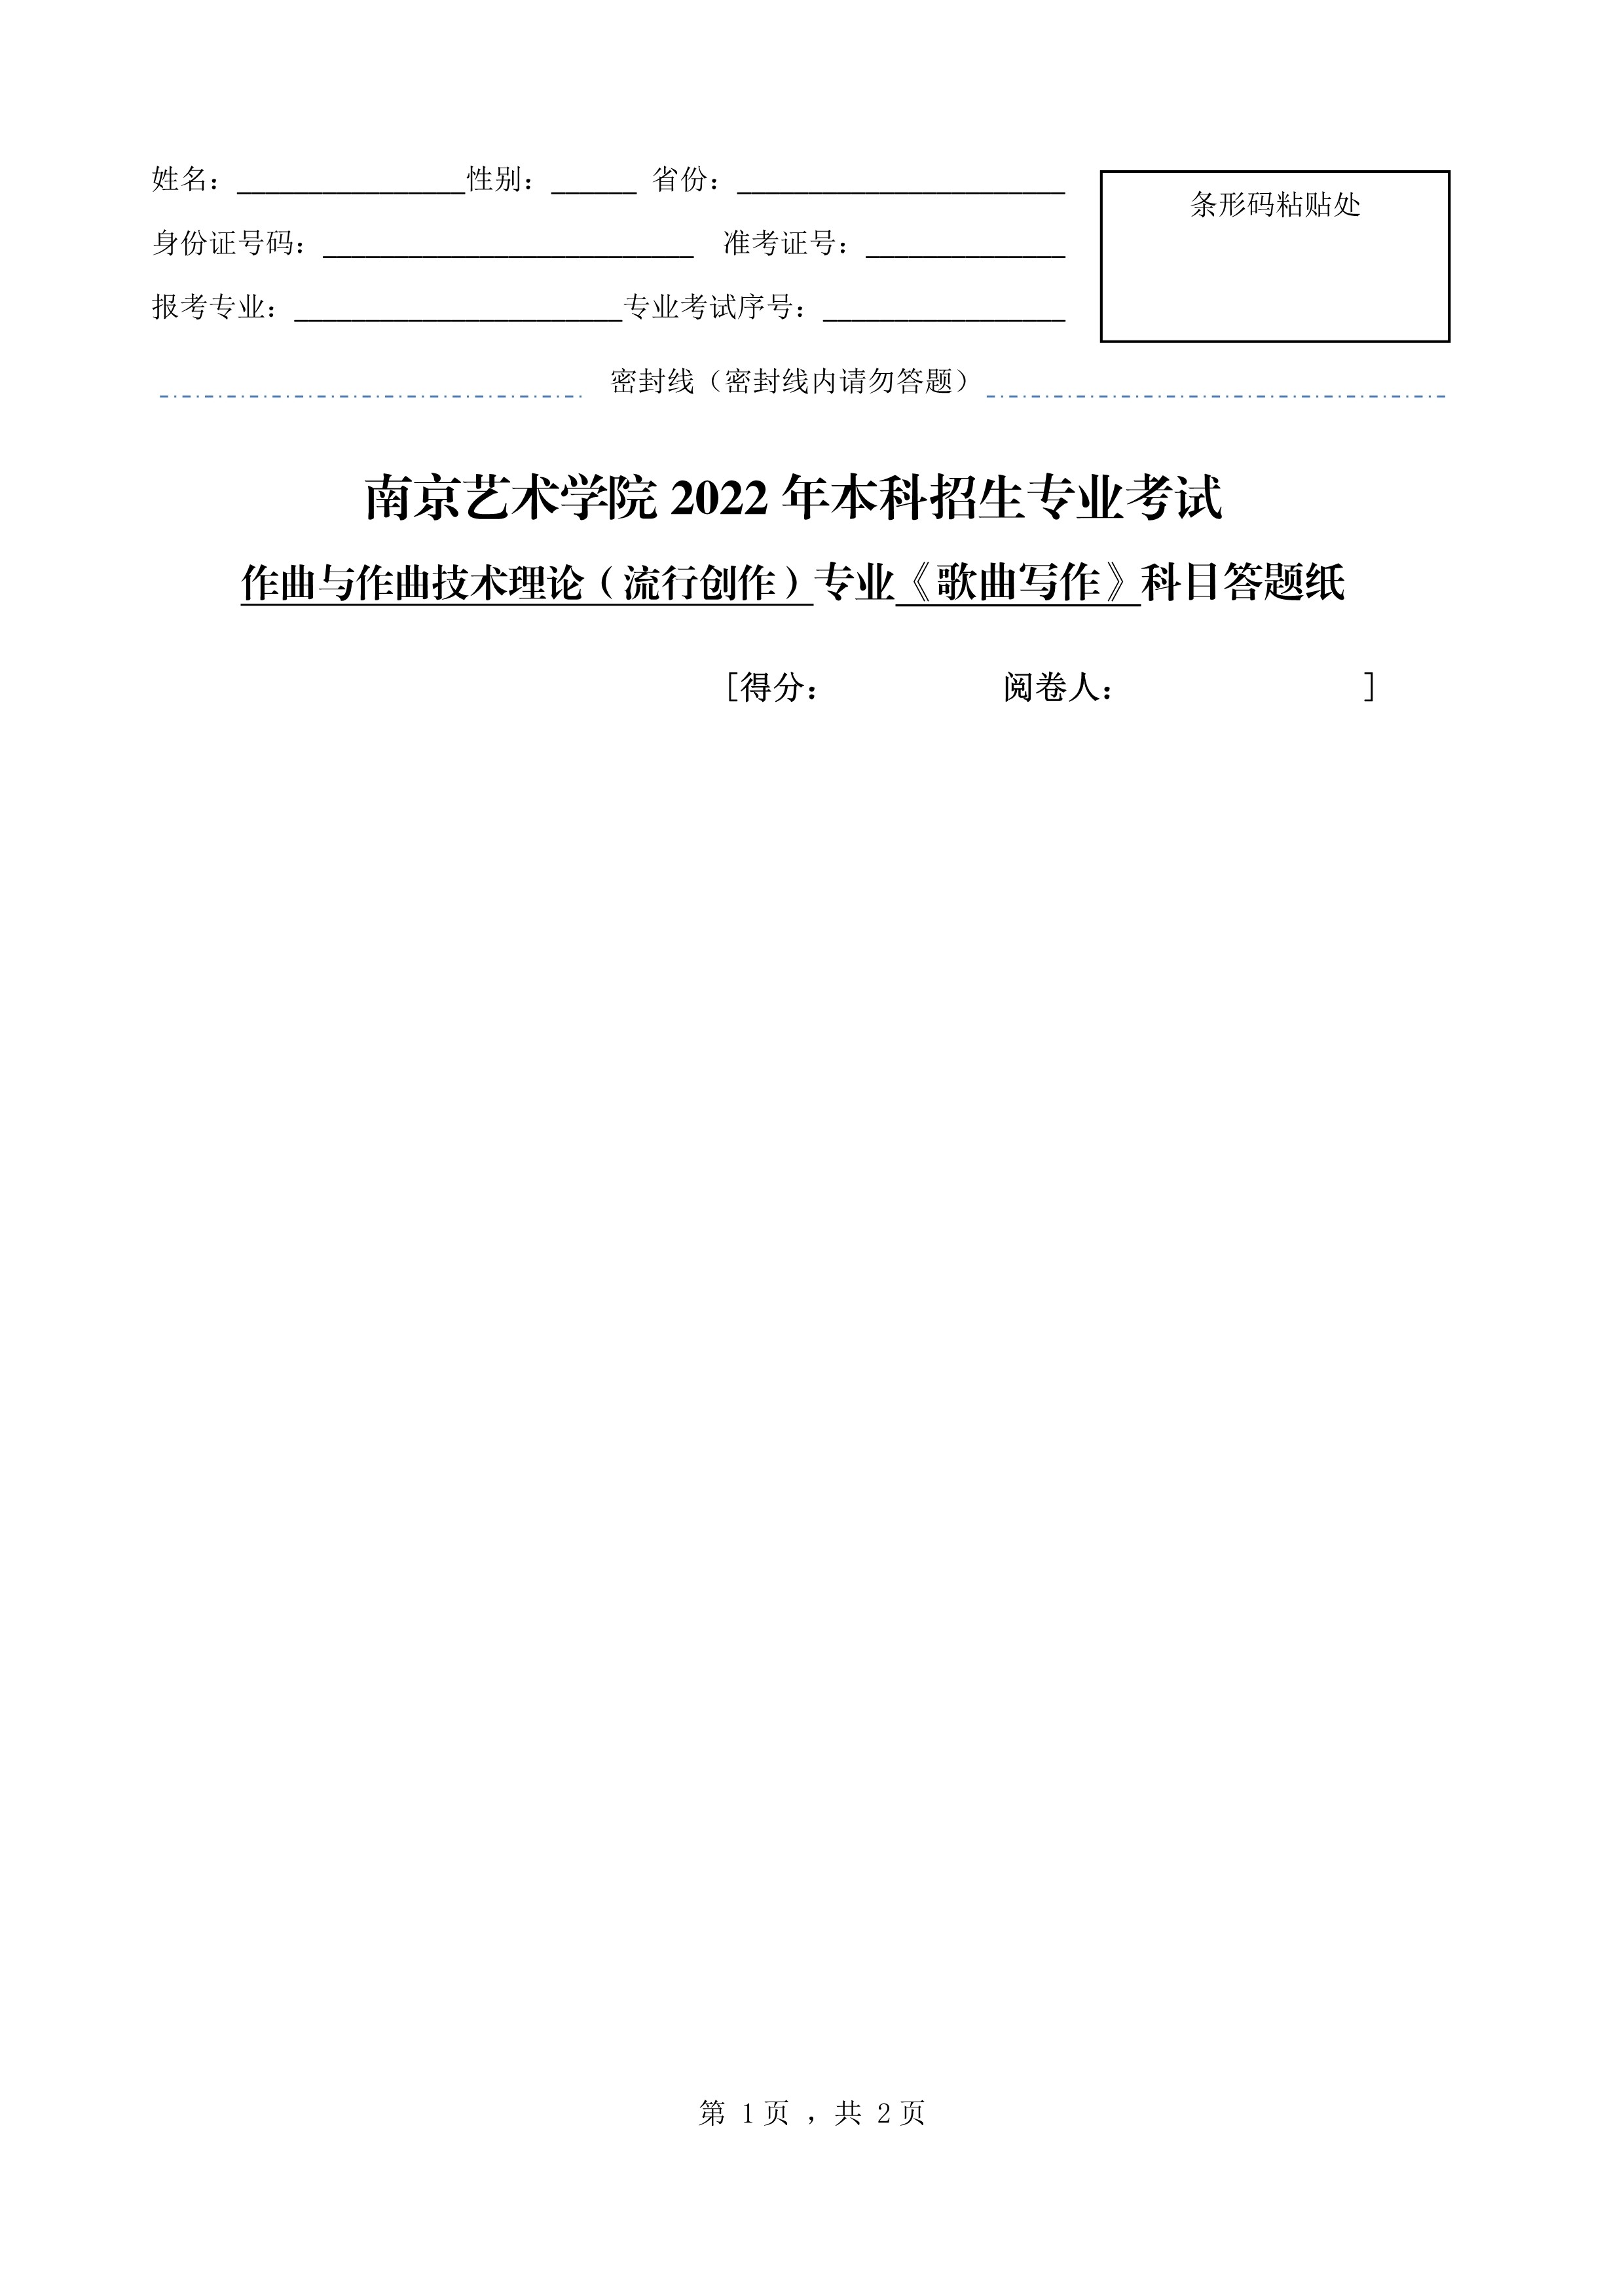 南京艺术学院2022年本科招生作曲与作曲技术理论（流行创作）专业《歌曲写作》科目考试答题纸_1.jpg